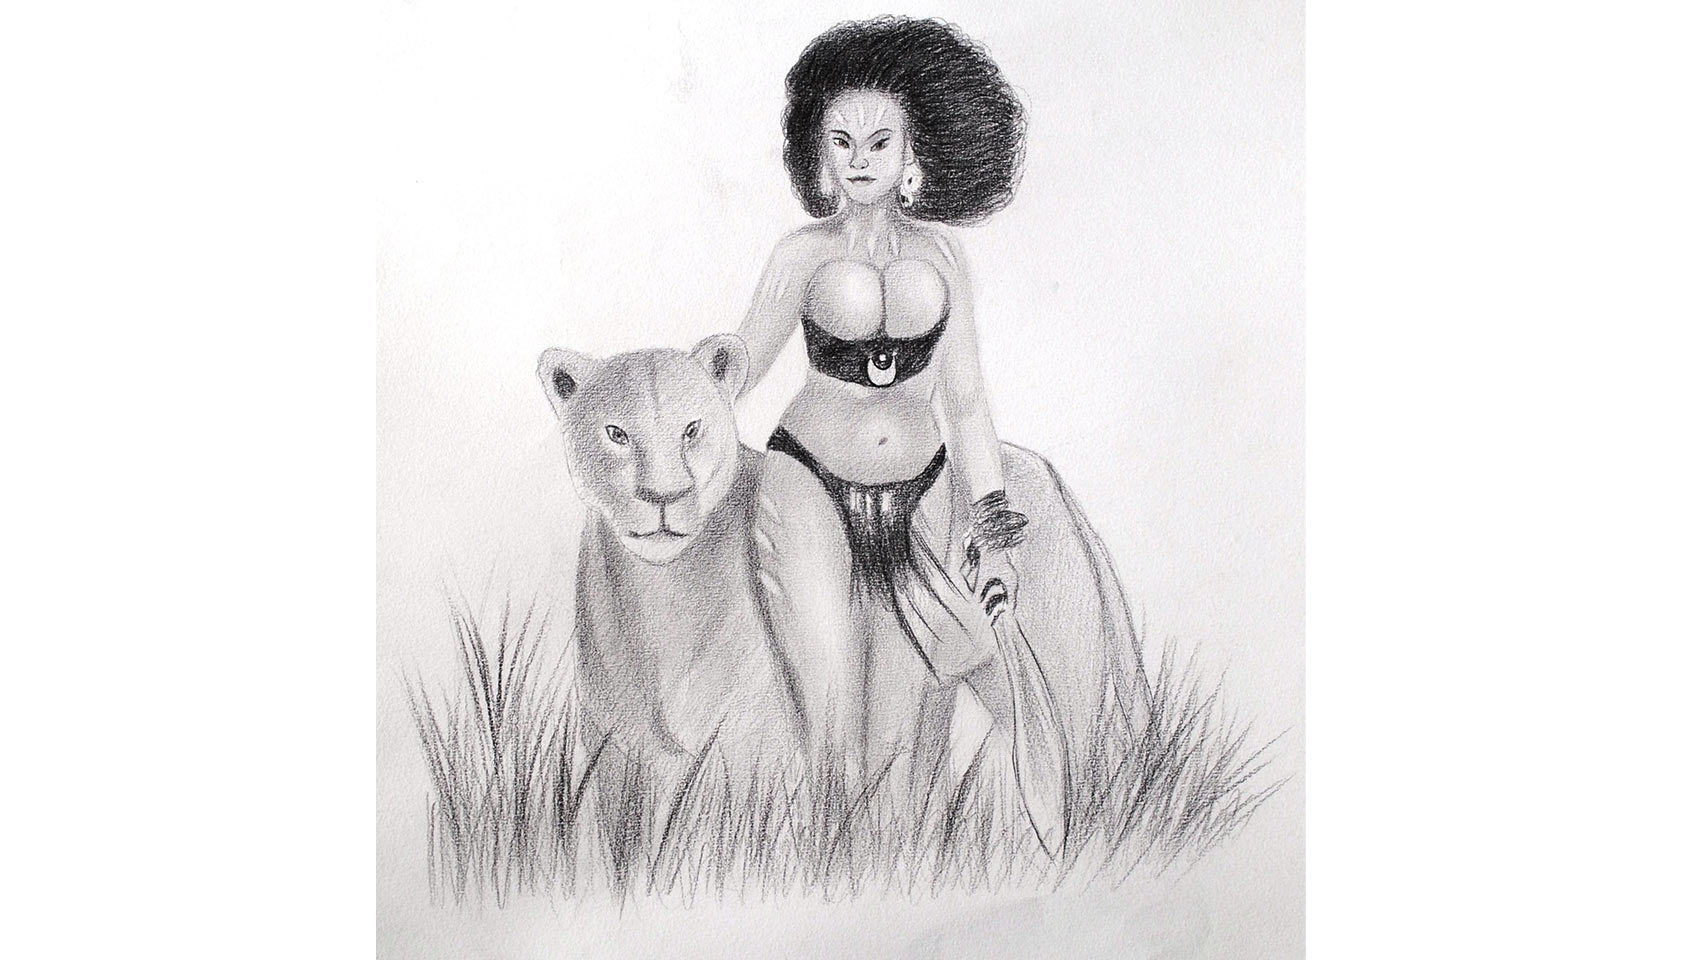 La selva. Representación de África, la mujer y la selva.